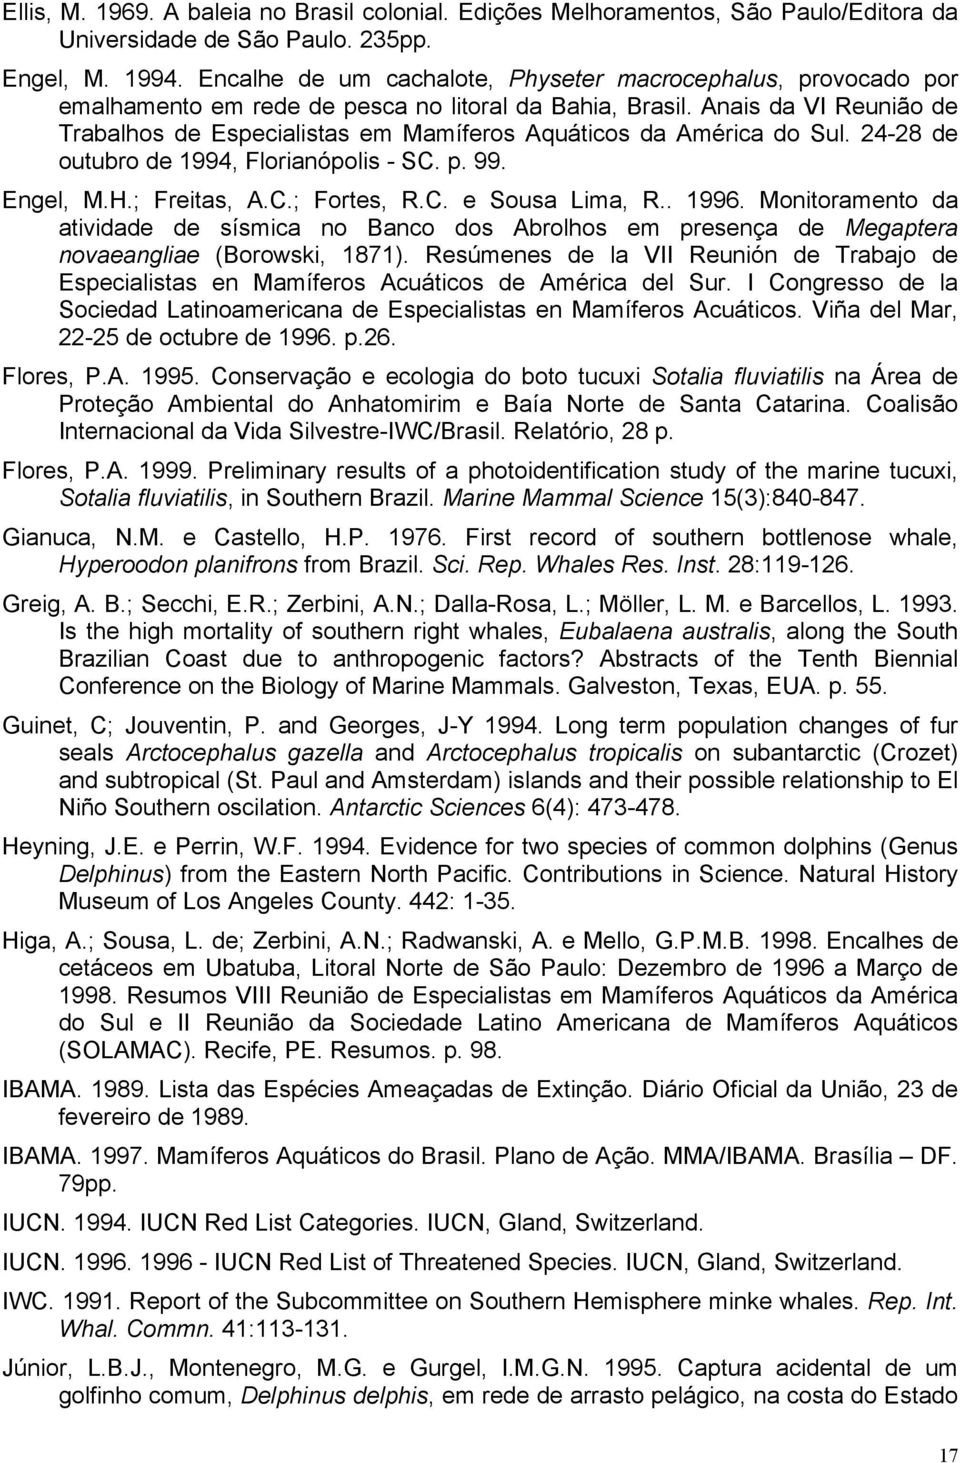 Anais da VI Reunião de Trabalhos de Especialistas em Mamíferos Aquáticos da América do Sul. 24-28 de outubro de 1994, Florianópolis - SC. p. 99. Engel, M.H.; Freitas, A.C.; Fortes, R.C. e Sousa Lima, R.